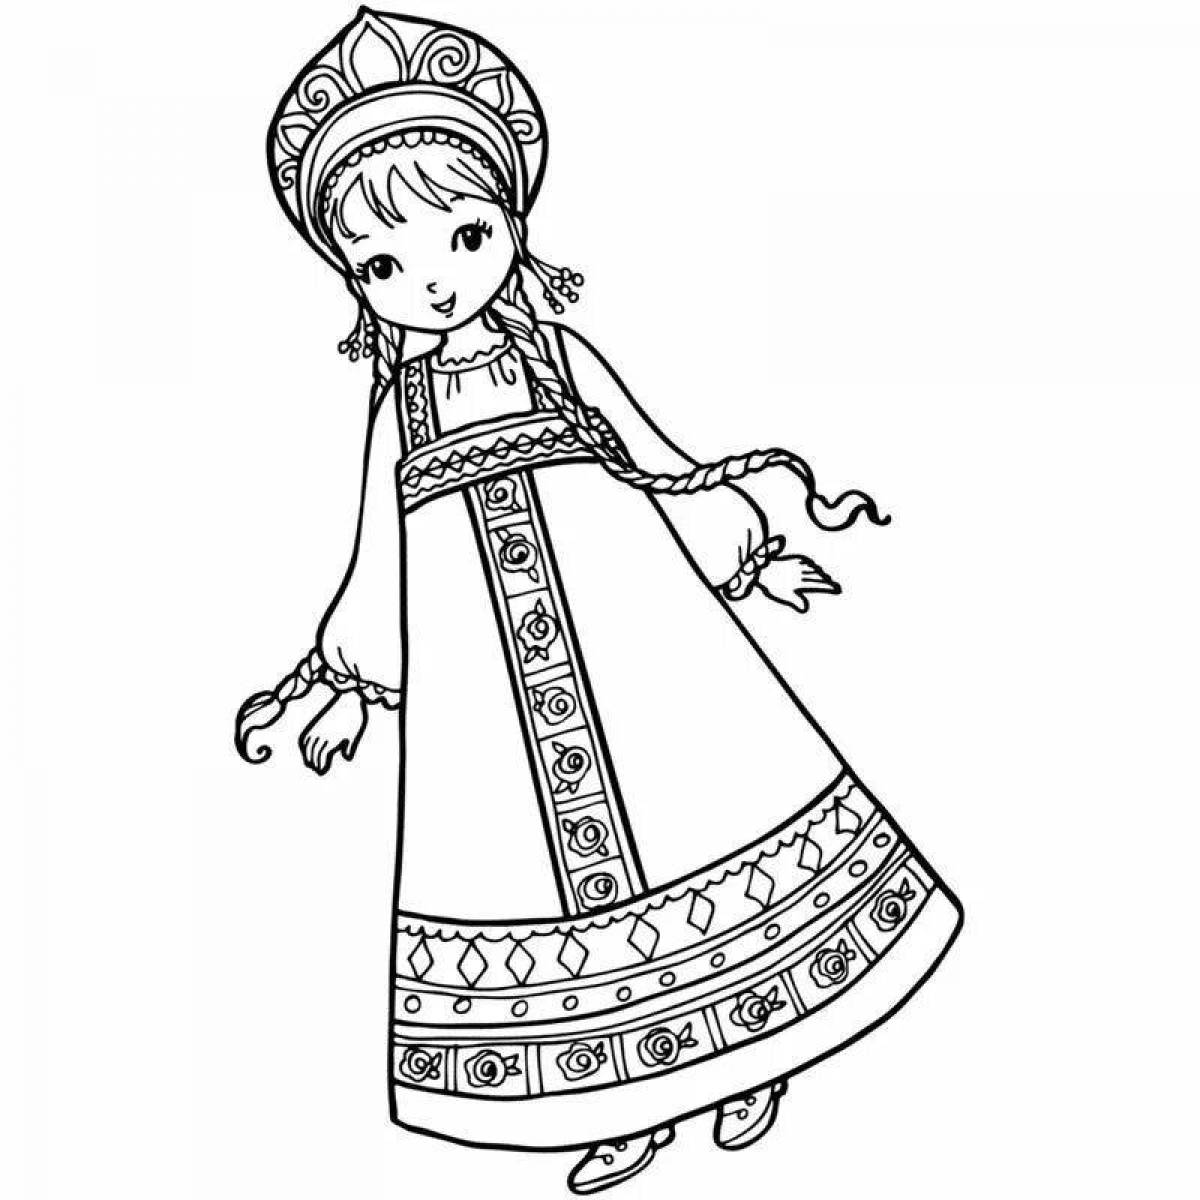 Ornamental Russian women's folk costume